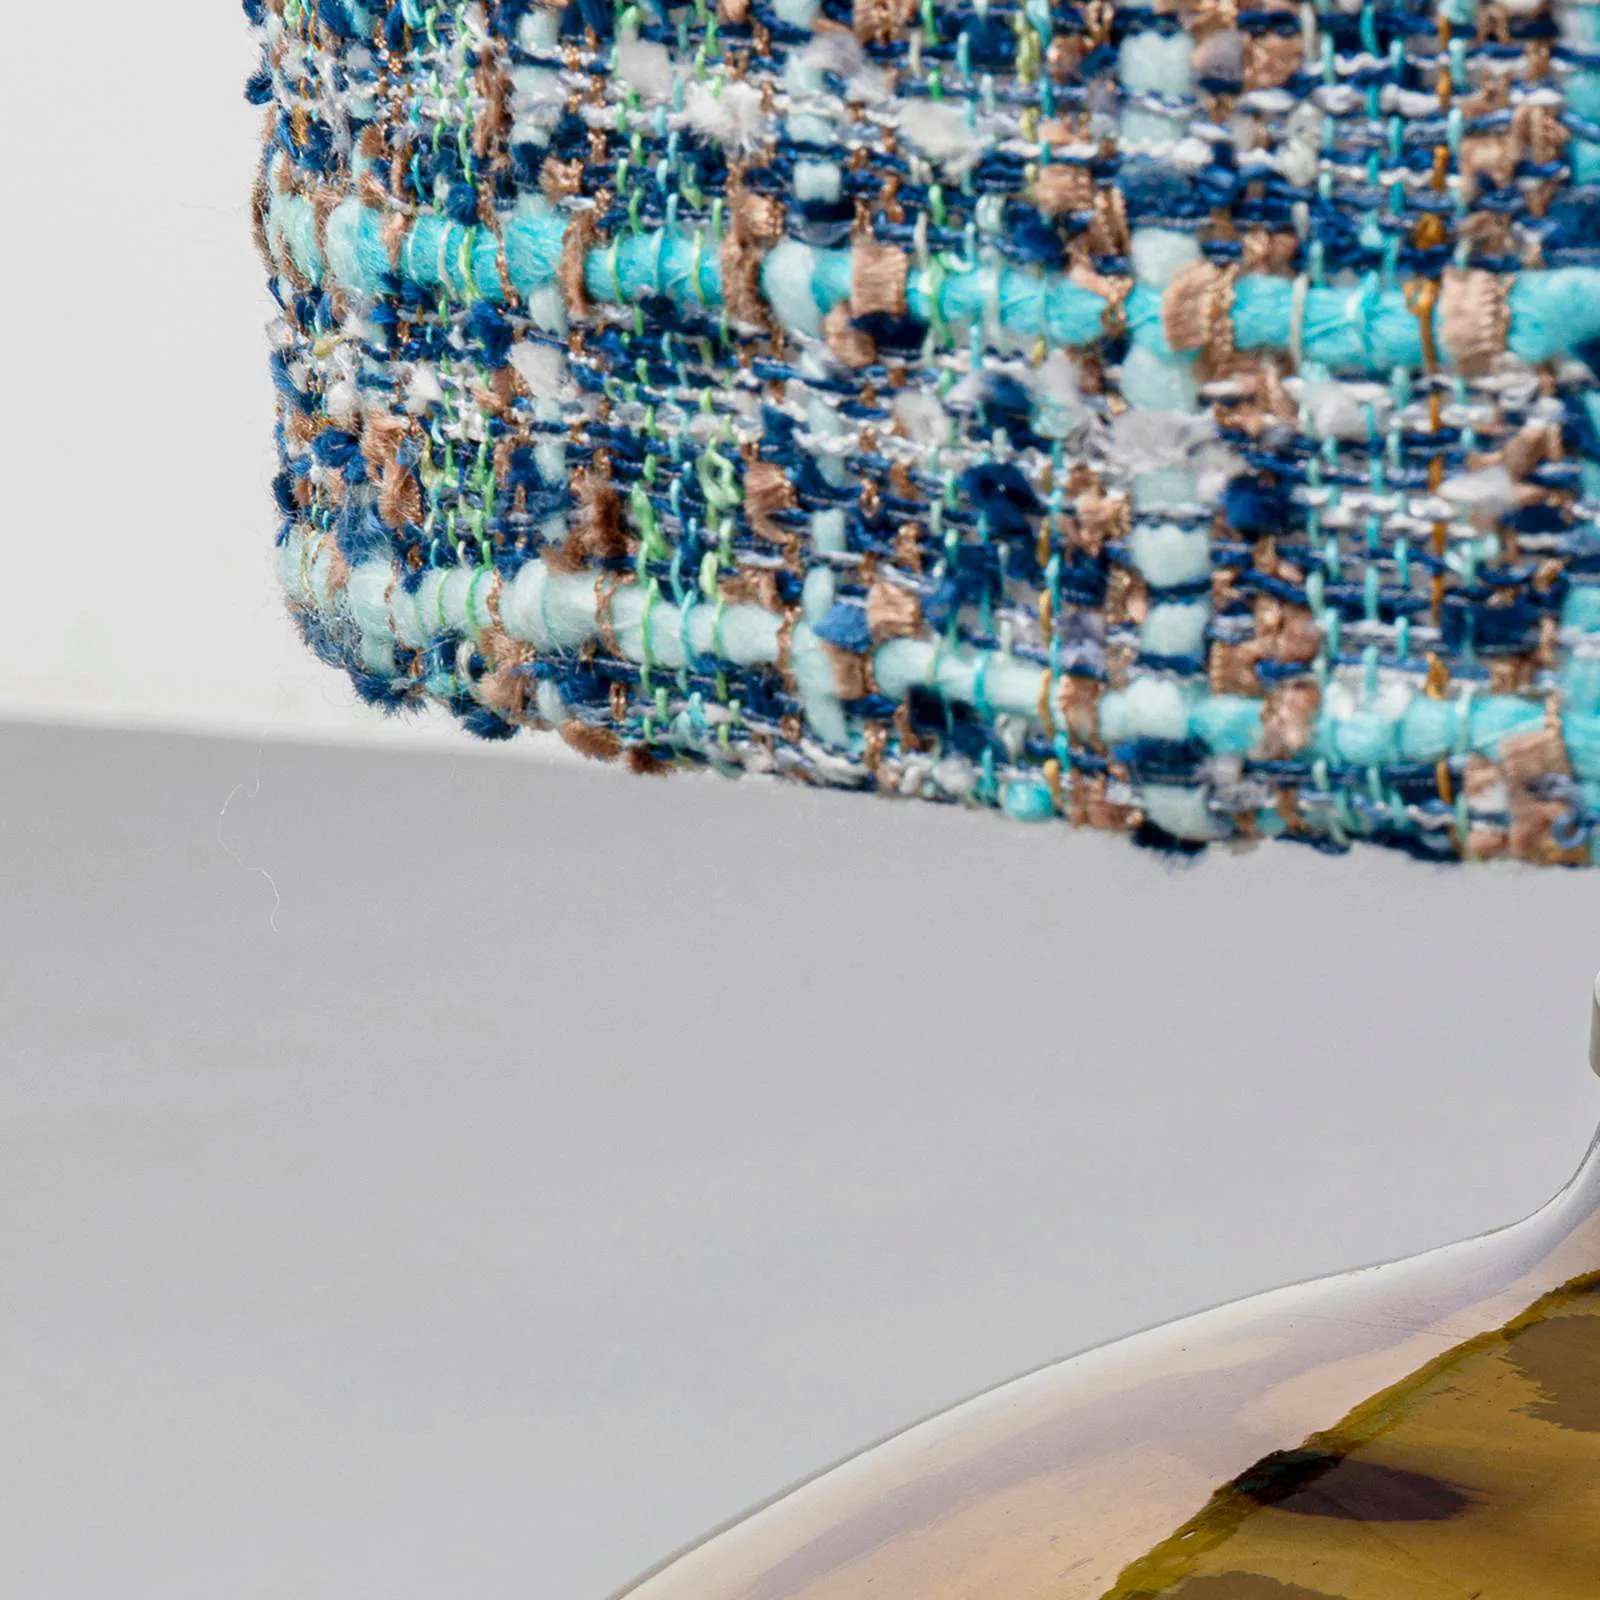 KARE Zagora Stehlampe Textilschirm in Pastelltönen günstig online kaufen